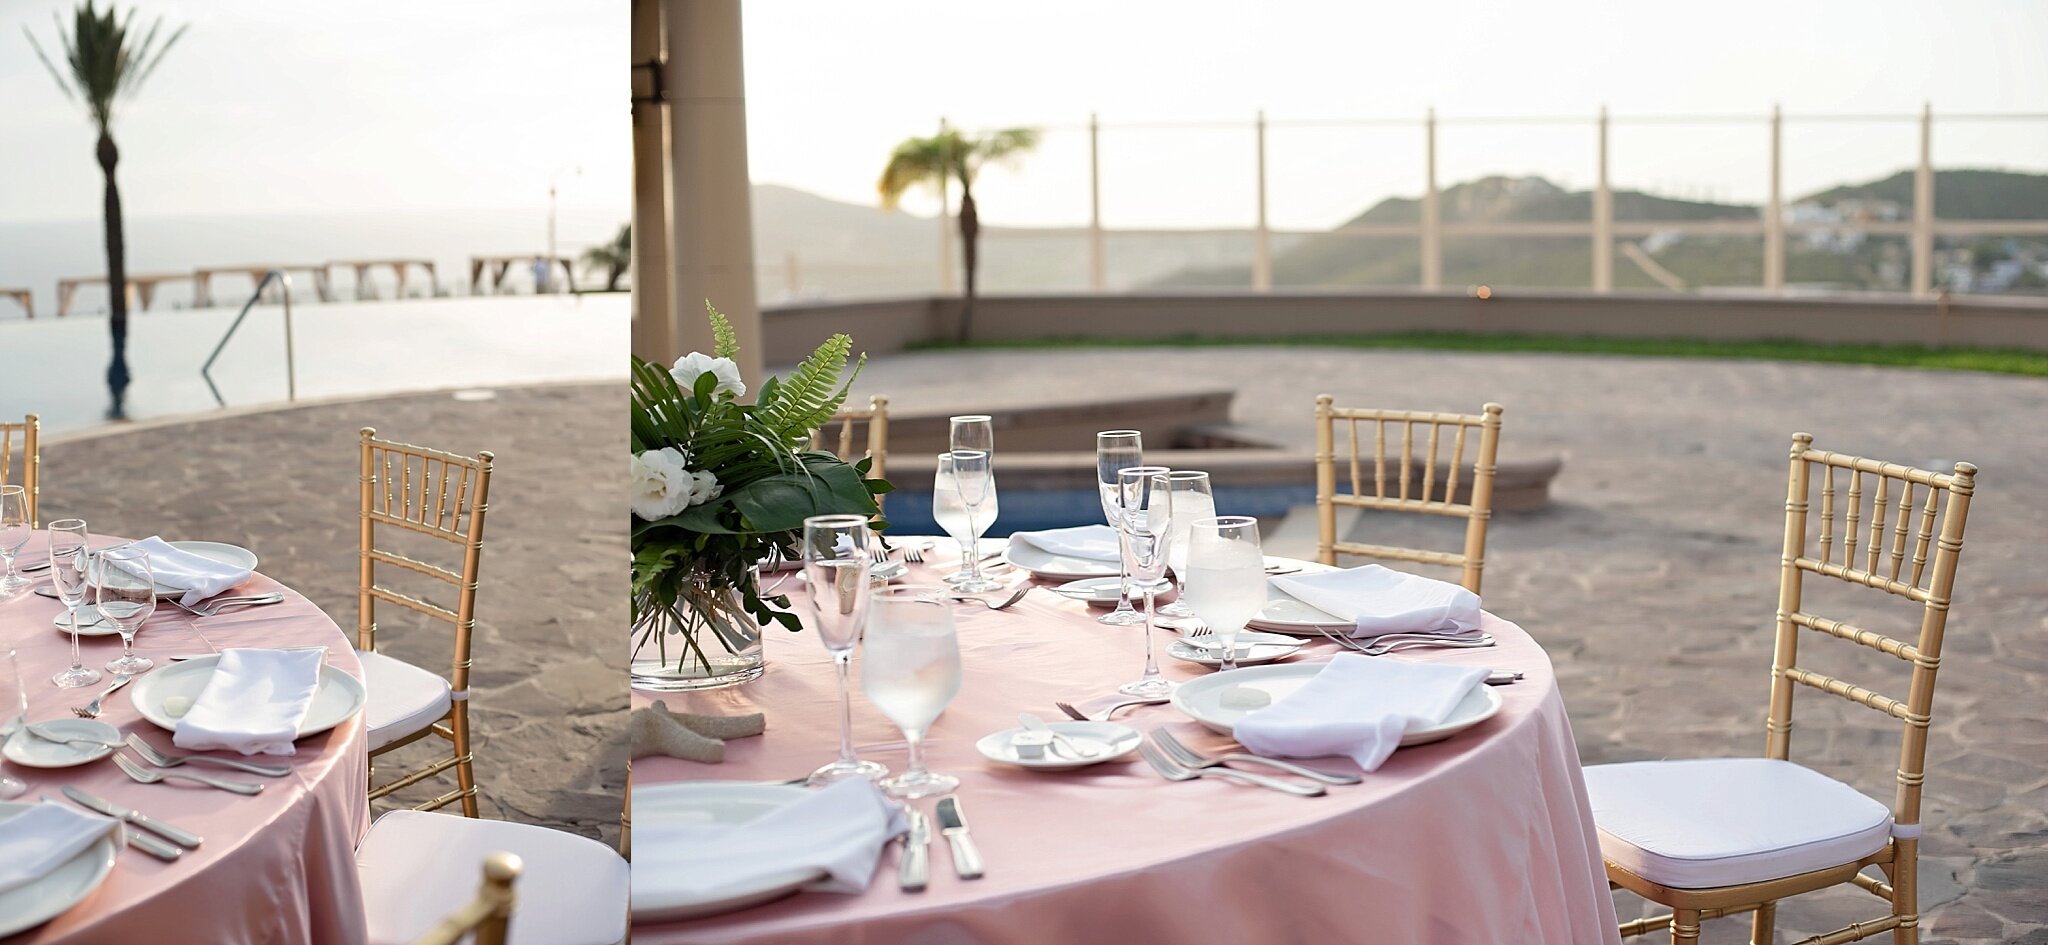 rooftop poolside wedding reception destination pueblo bonito sunset beach mexico